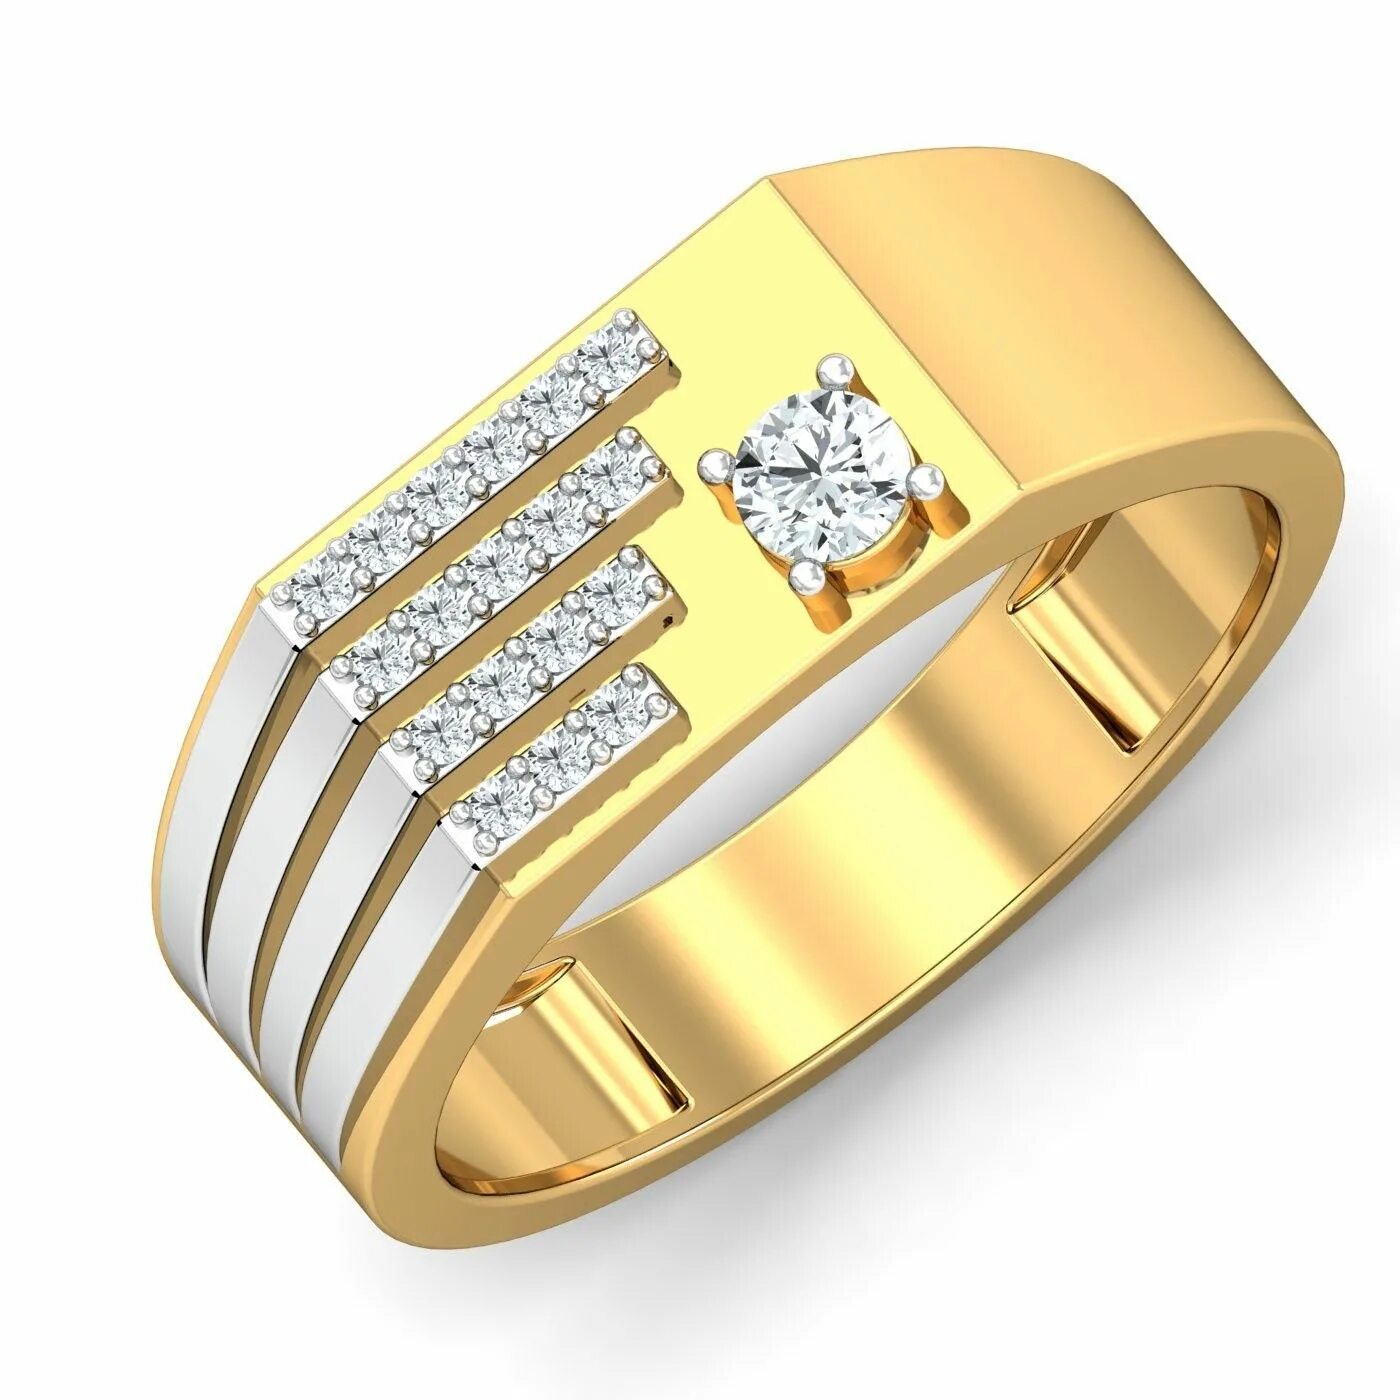 Мужские золотые кольца Даймонд. Кольцо Картье печатка. Кольца Голд Голд кольца. Золотое кольцо для мужчин